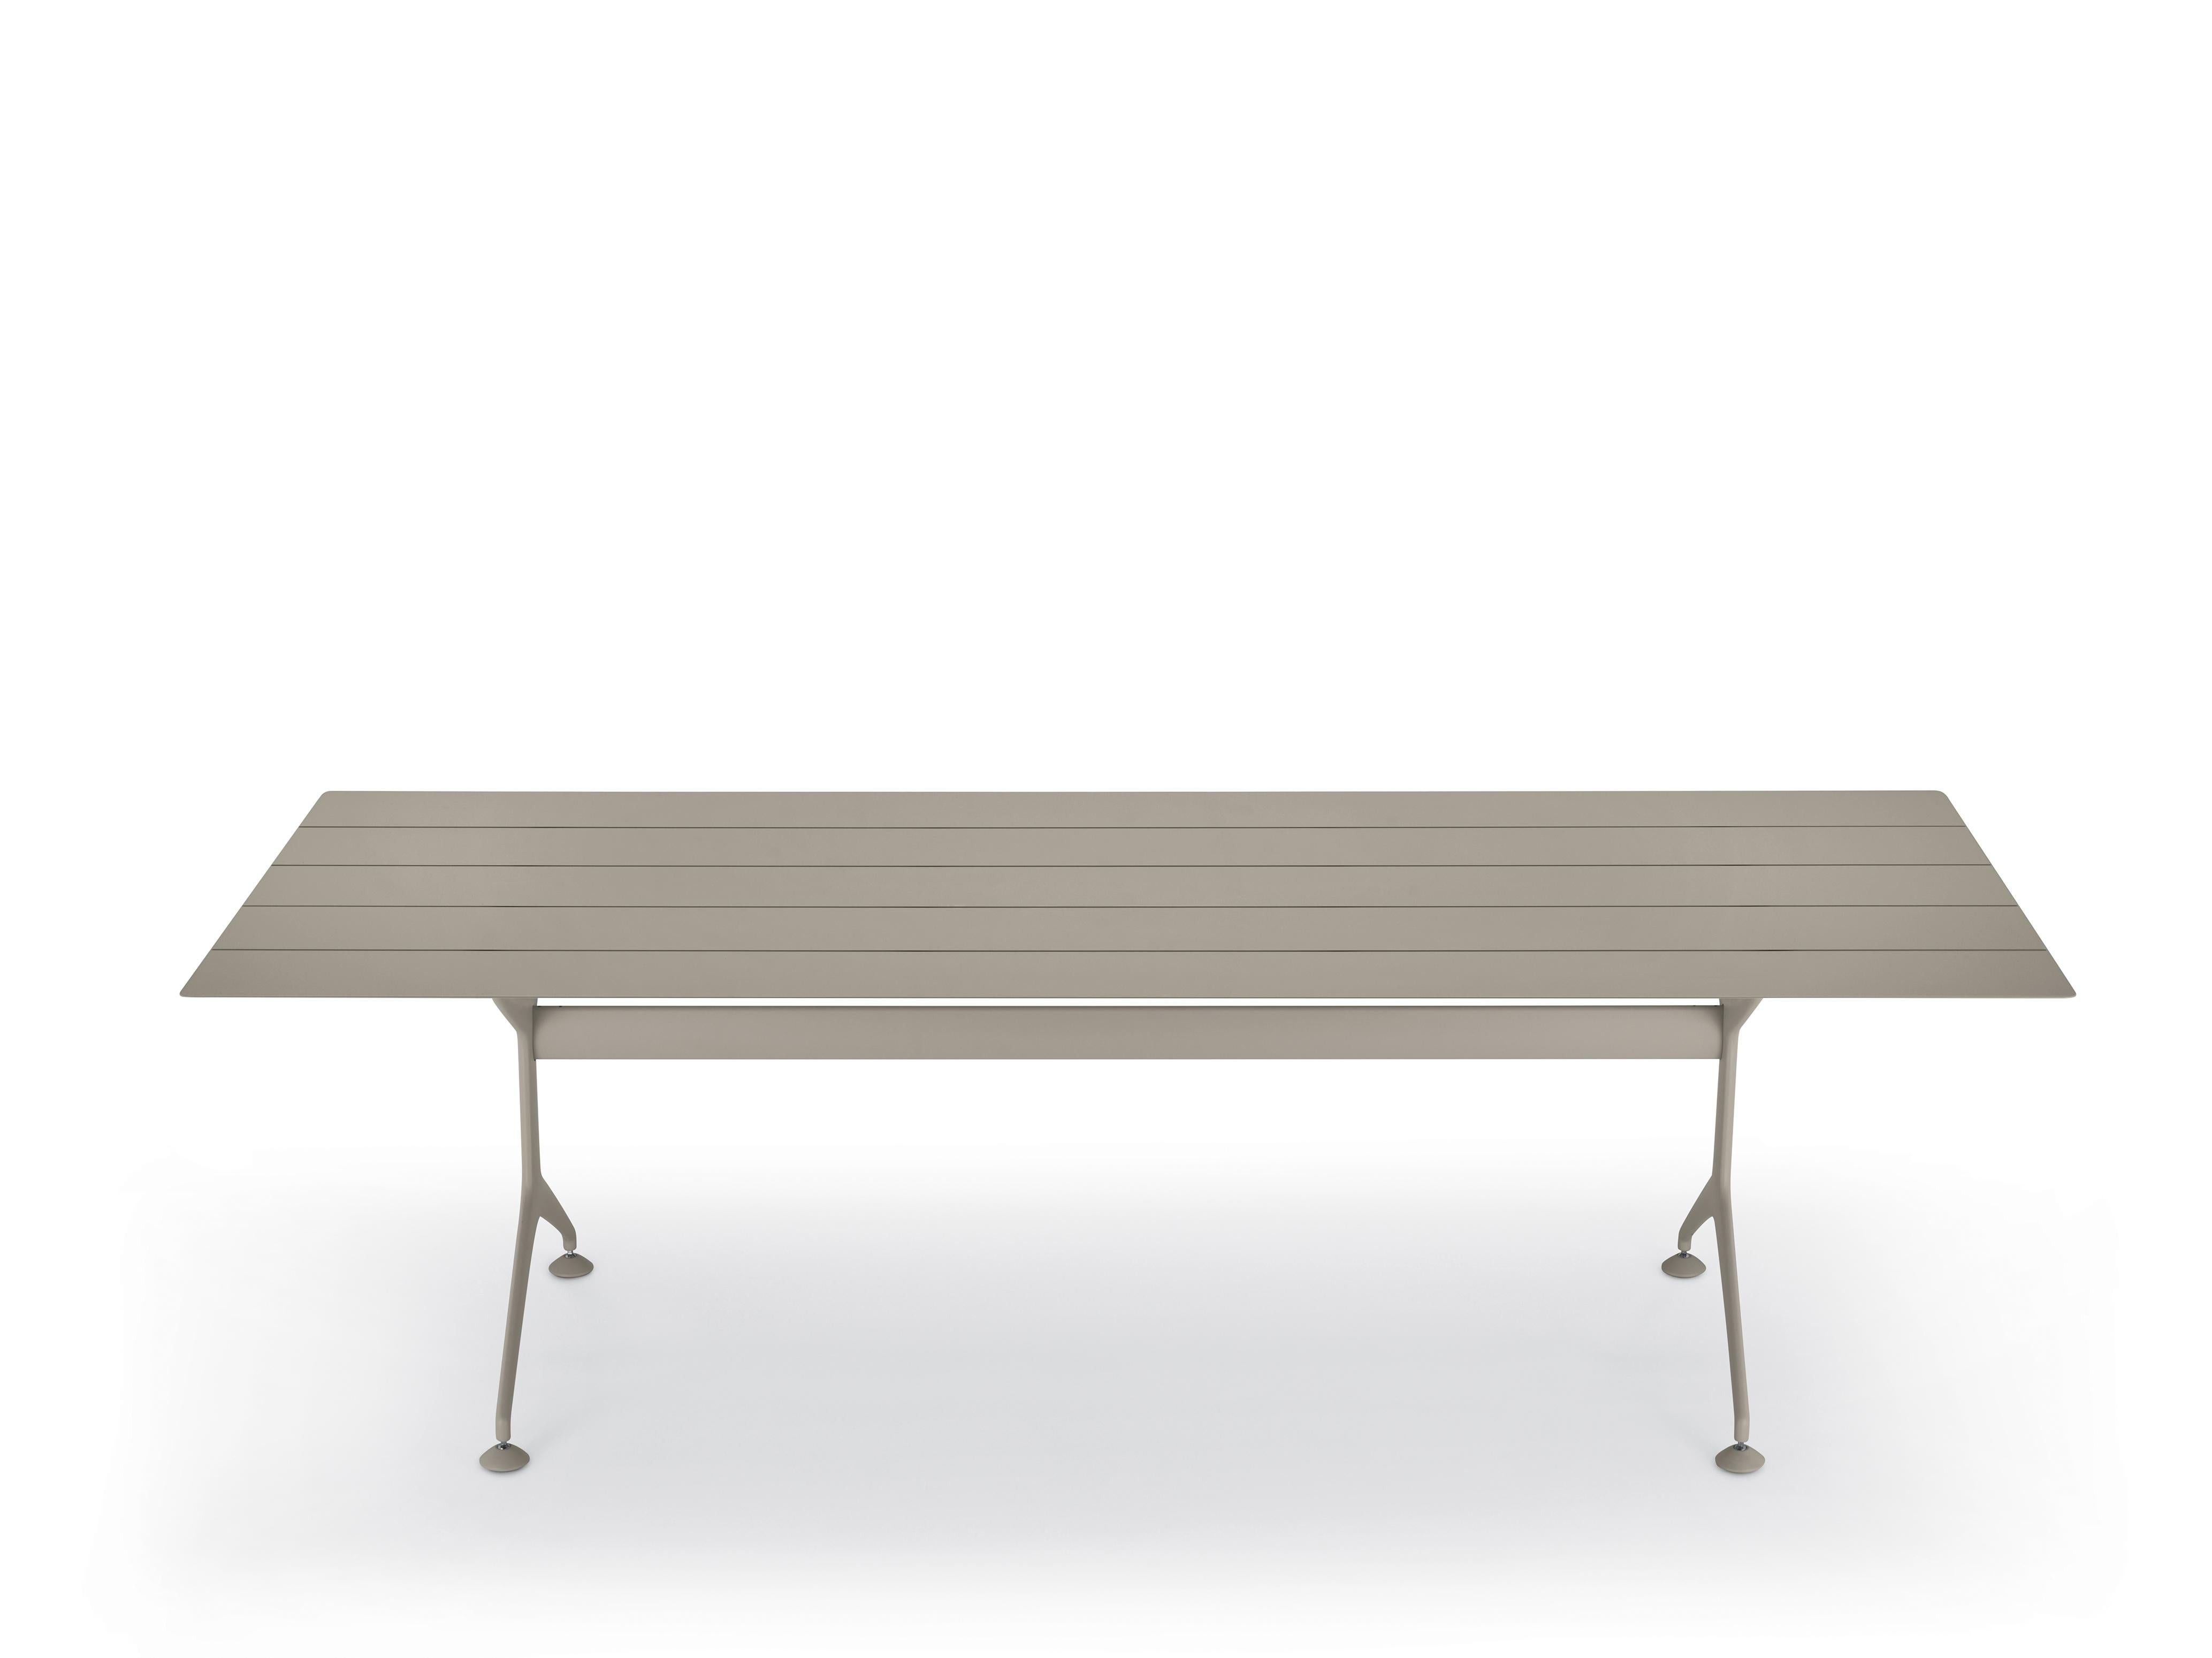 Alias 240 Rahmentisch für den Außenbereich aus sandfarben lackierten Aluminiumlamellen von Alberto Meda

Fester Tisch für den Außenbereich mit einer Struktur aus lackierten Aluminiumdruckgusselementen. Platte aus lackierten, stranggepressten